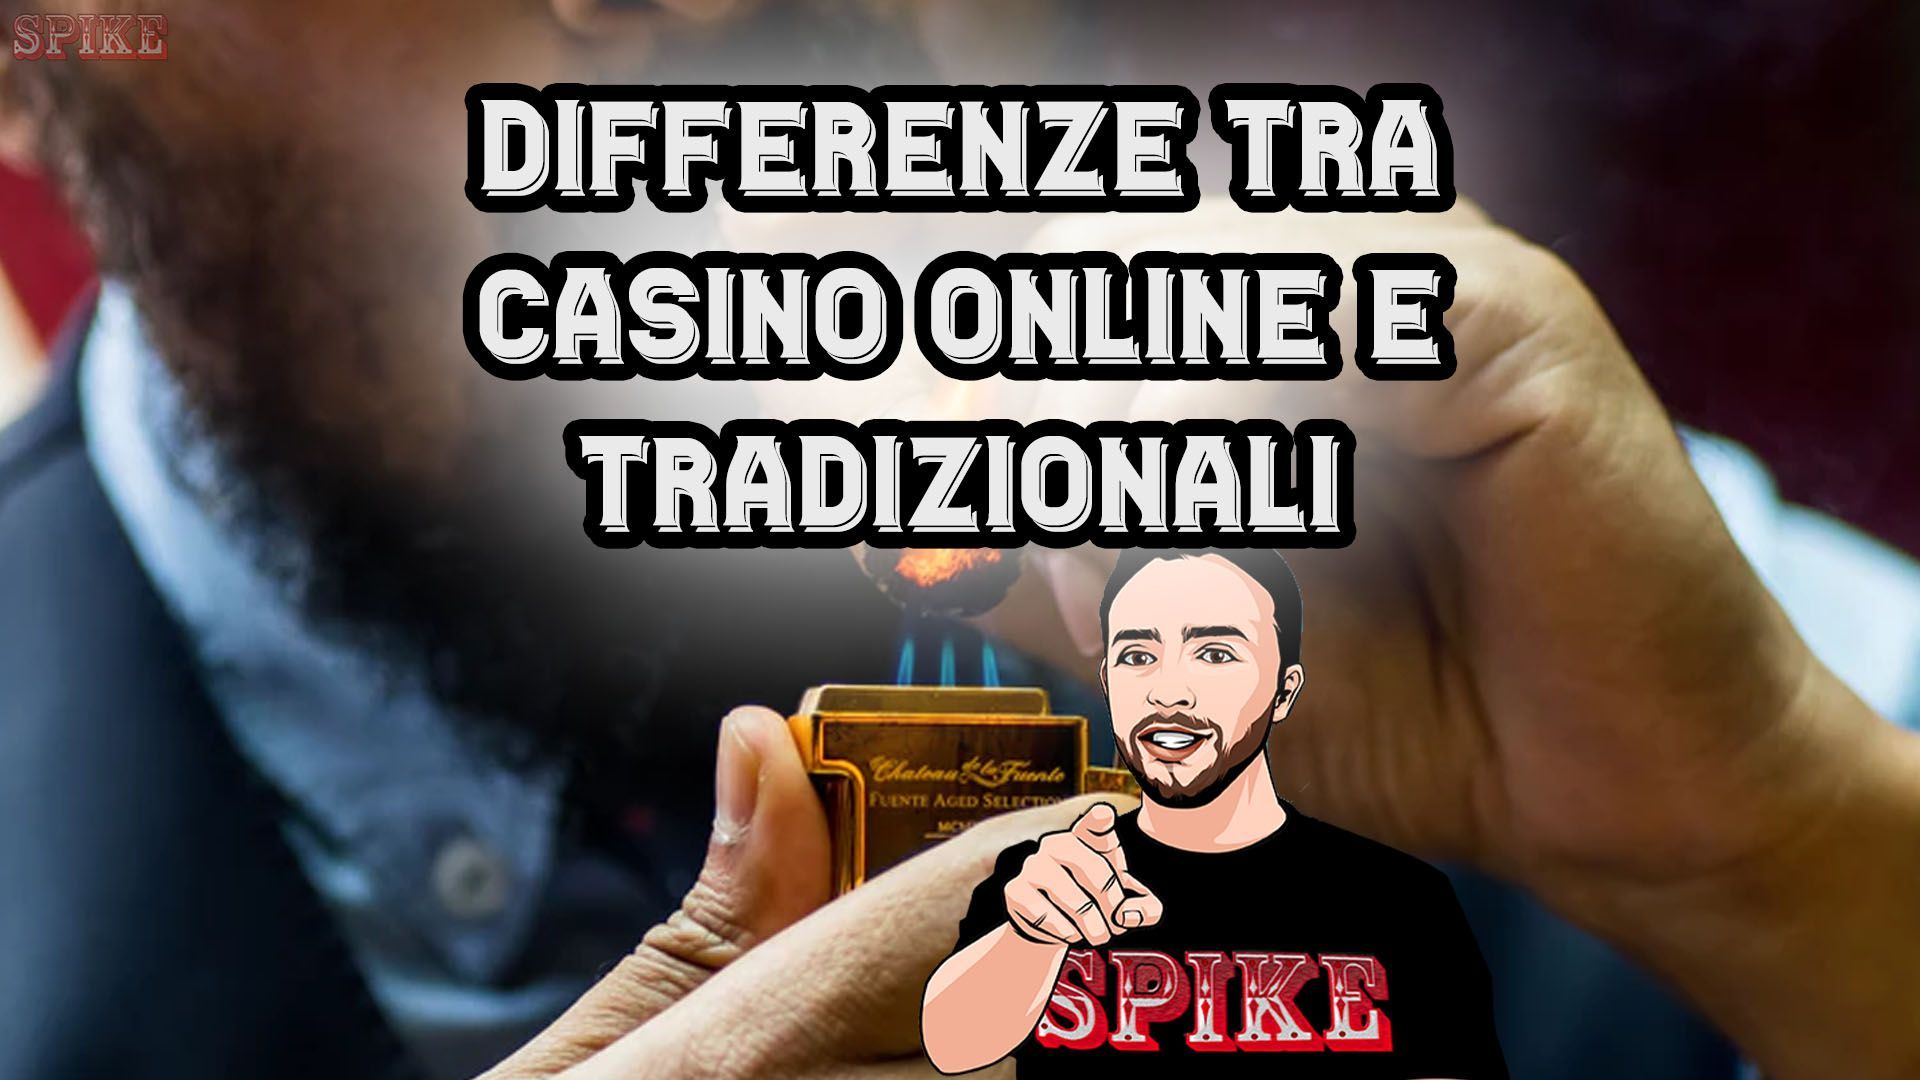 Casino Online Differenze